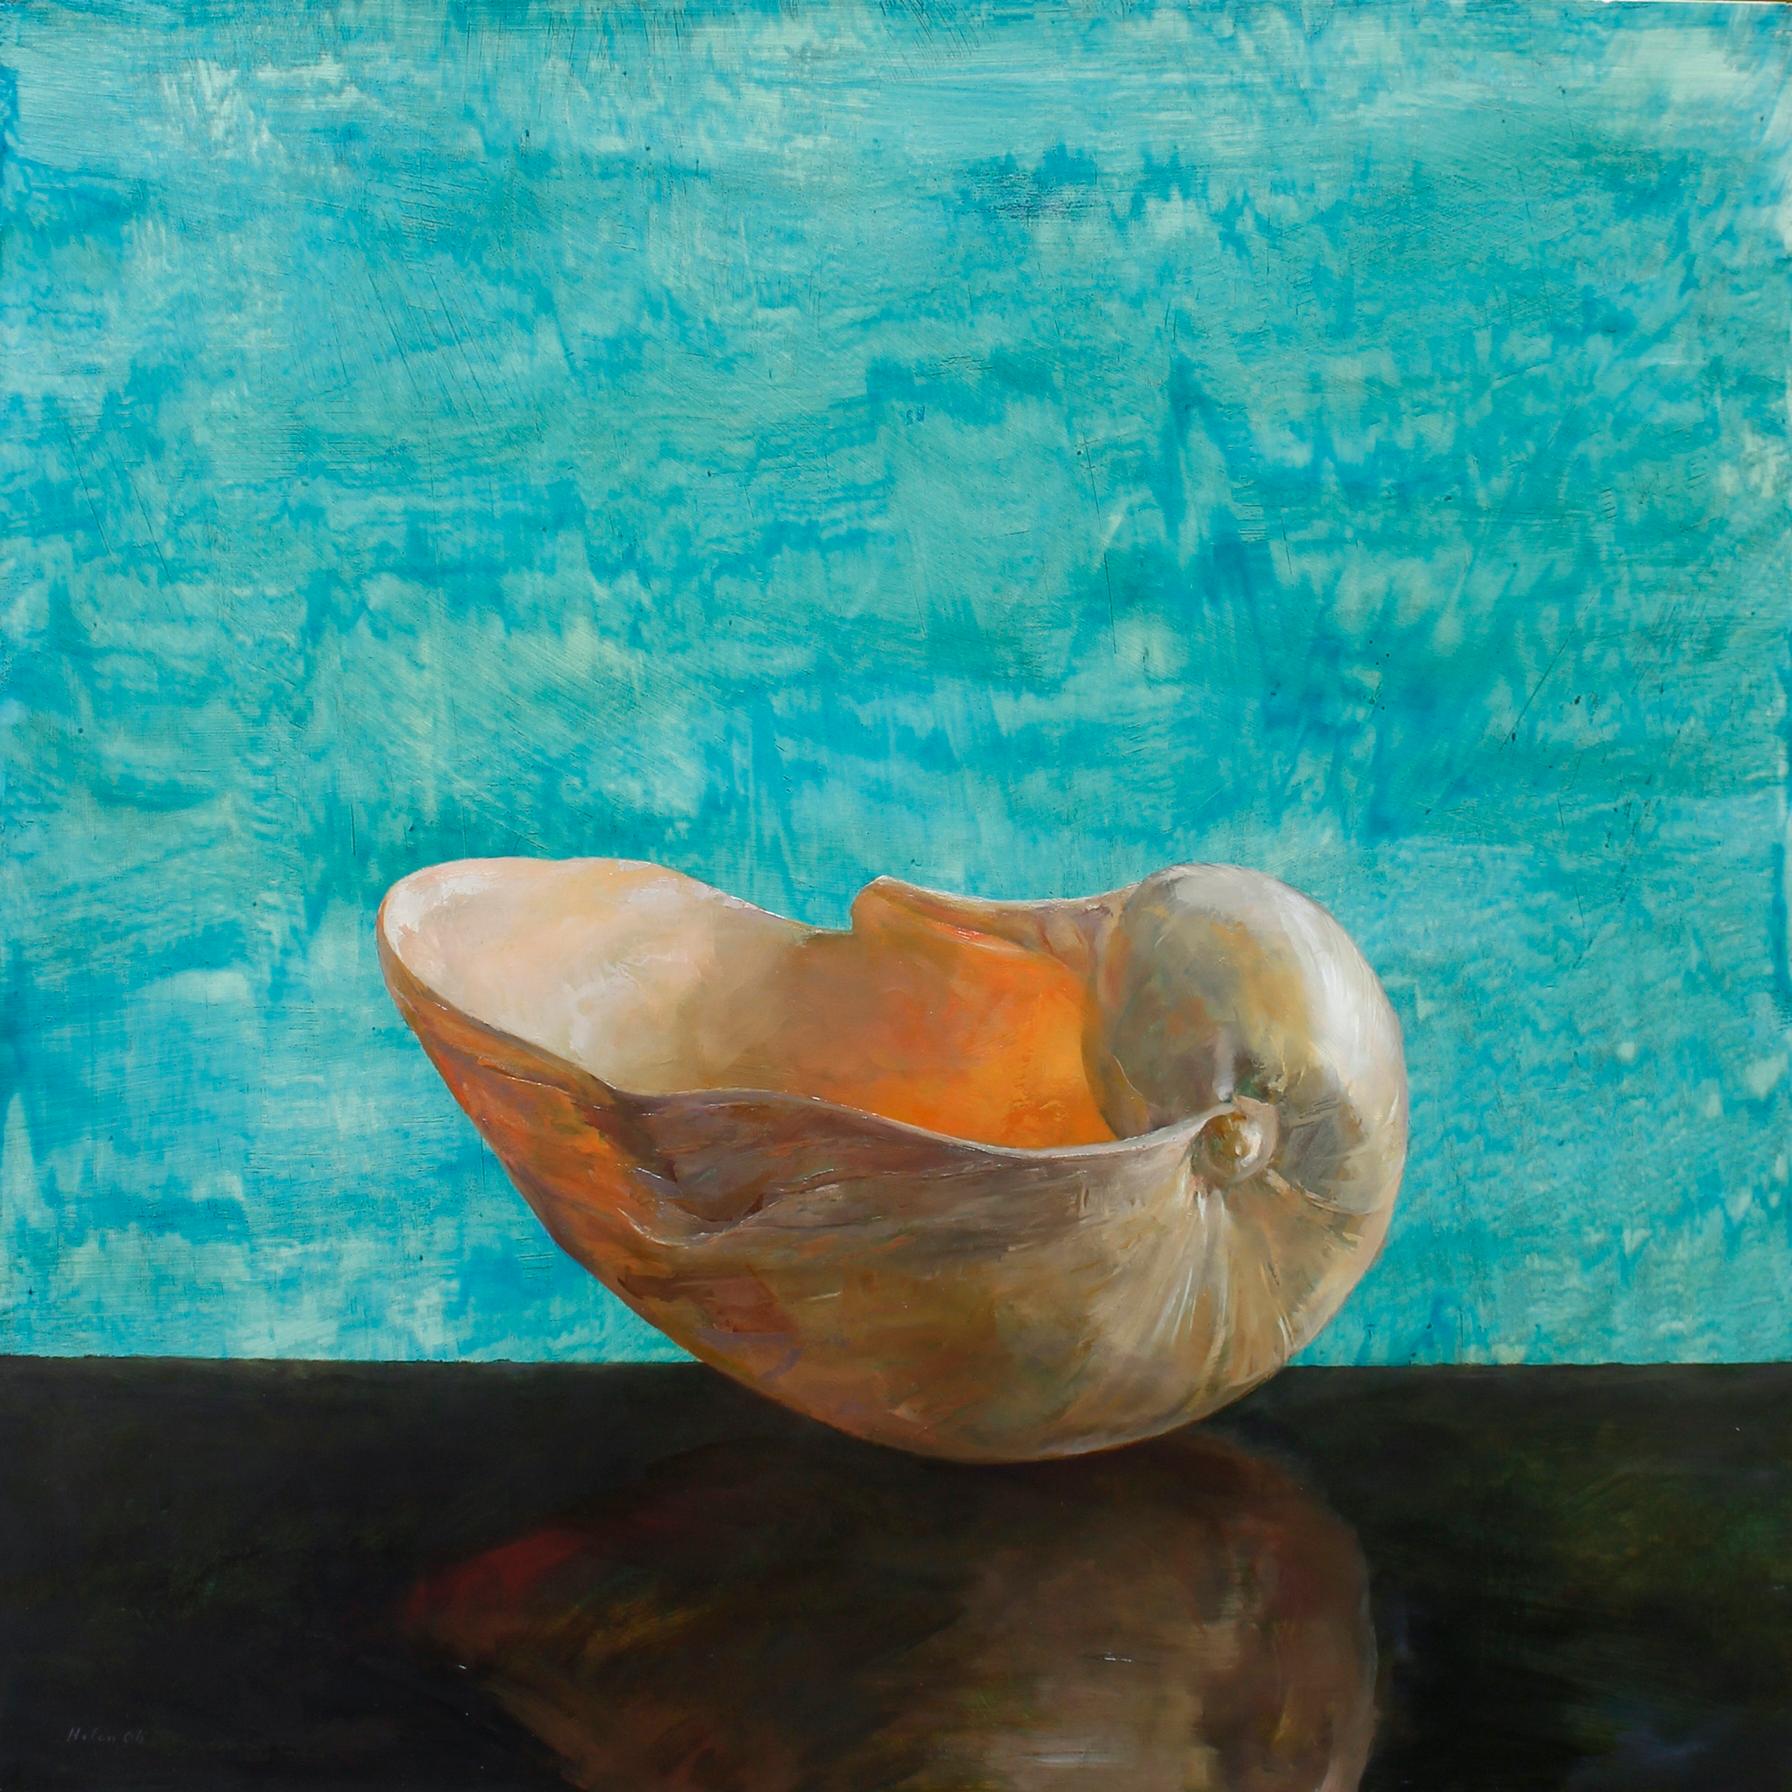 Aqua Bailer Shell - Einzelne Bailer-Muschel auf braunem Tisch mit gewaschenem Hintergrund